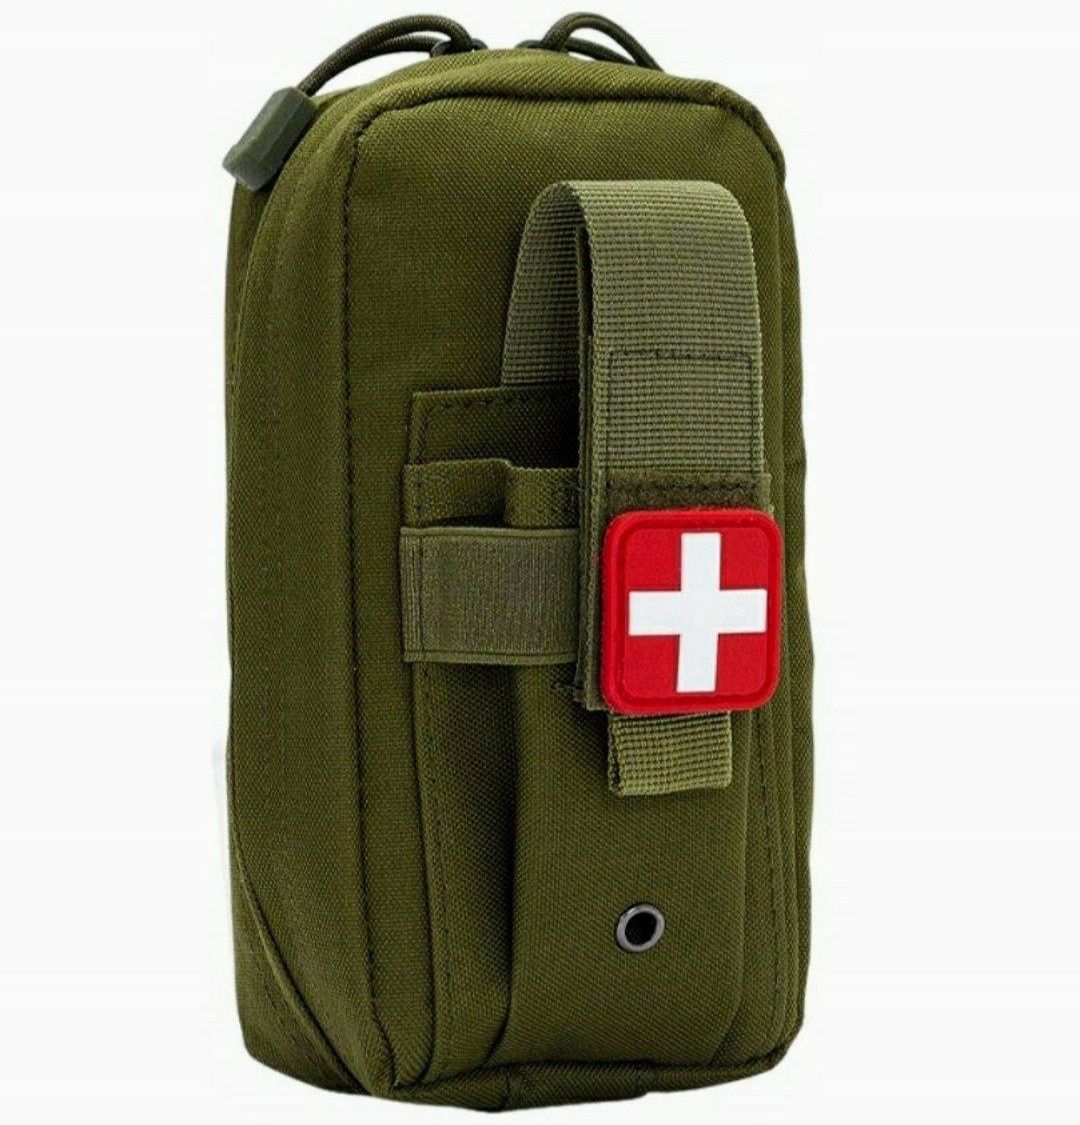 Saszetka wojskowa taktyczna mała Apteczka torba pierwszej pomocy